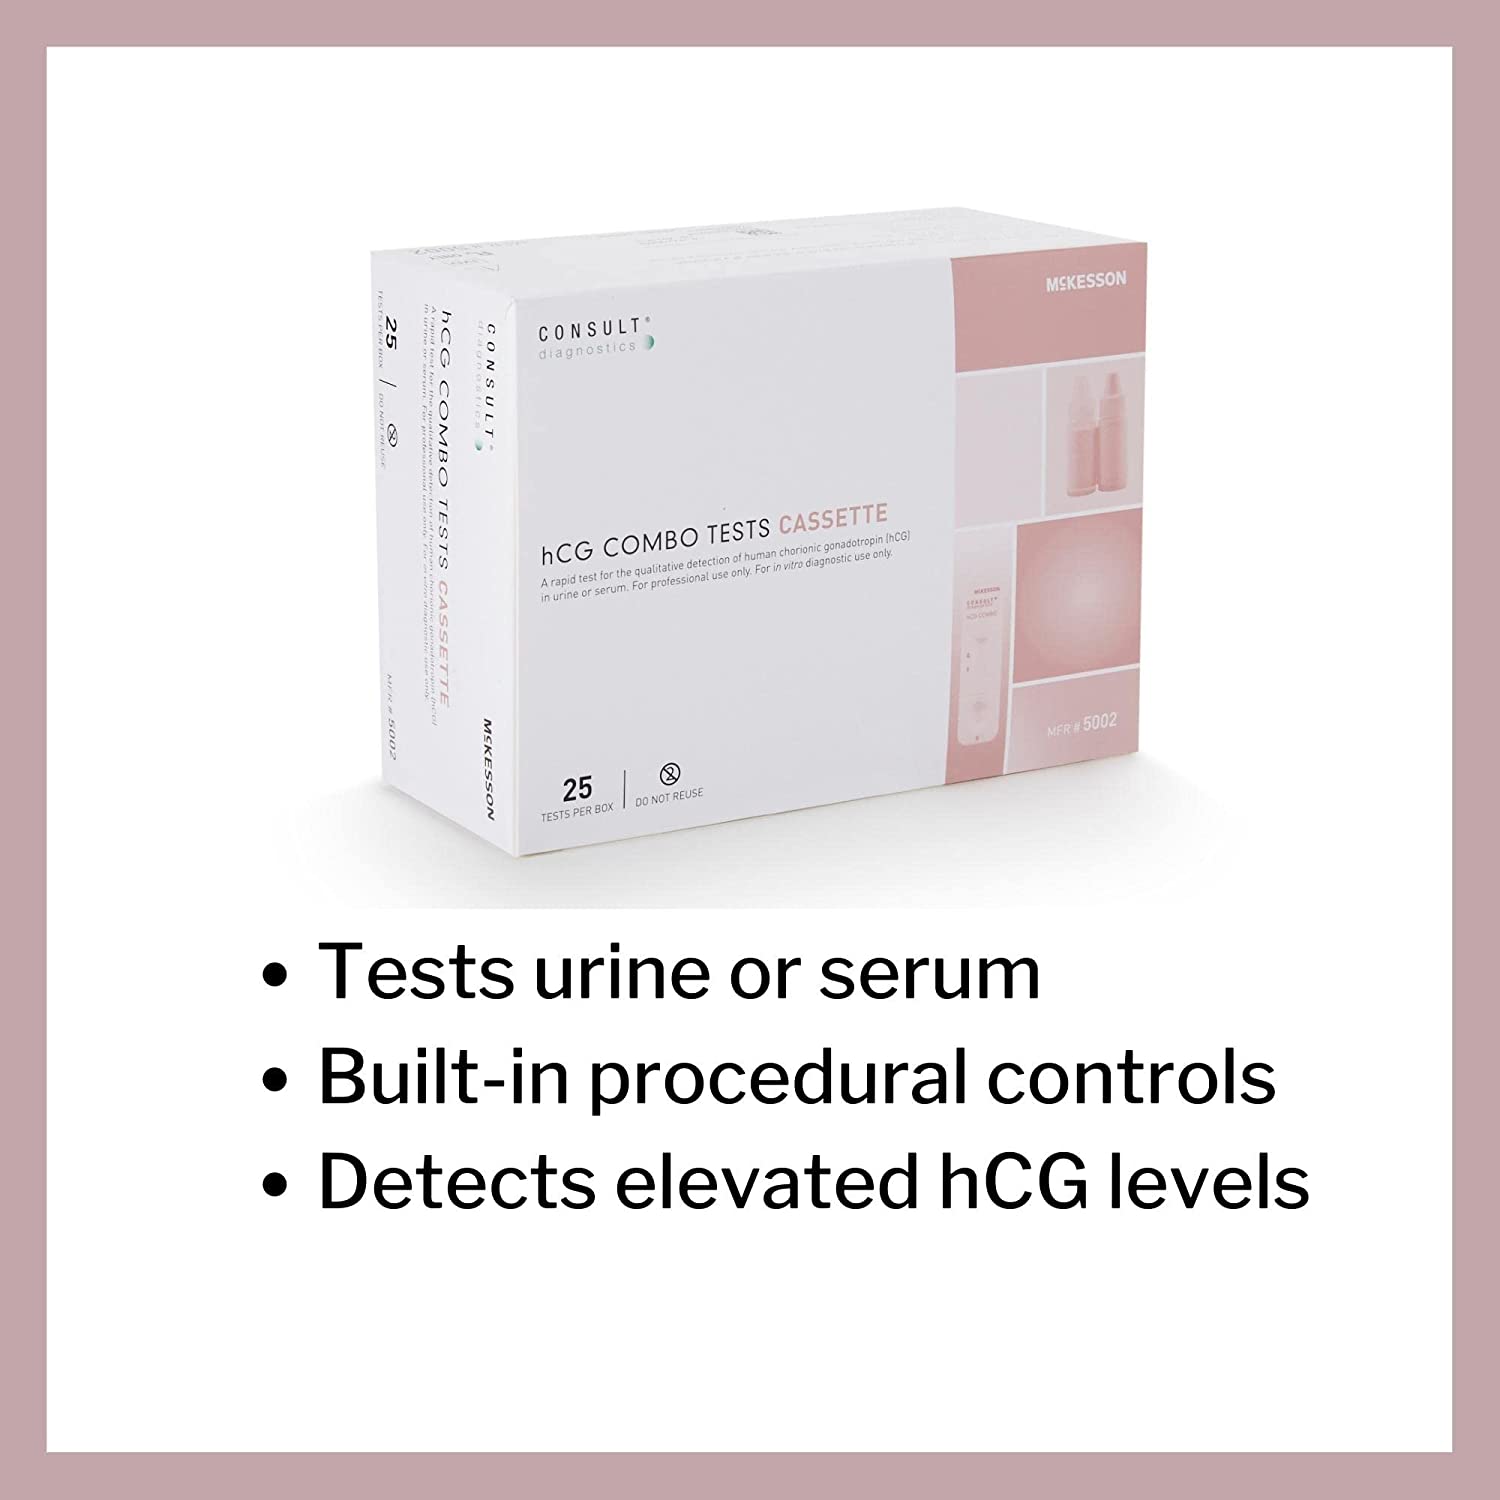 McKesson Rapid Pregnancy Test, Consult hCG Urine or Serum Test